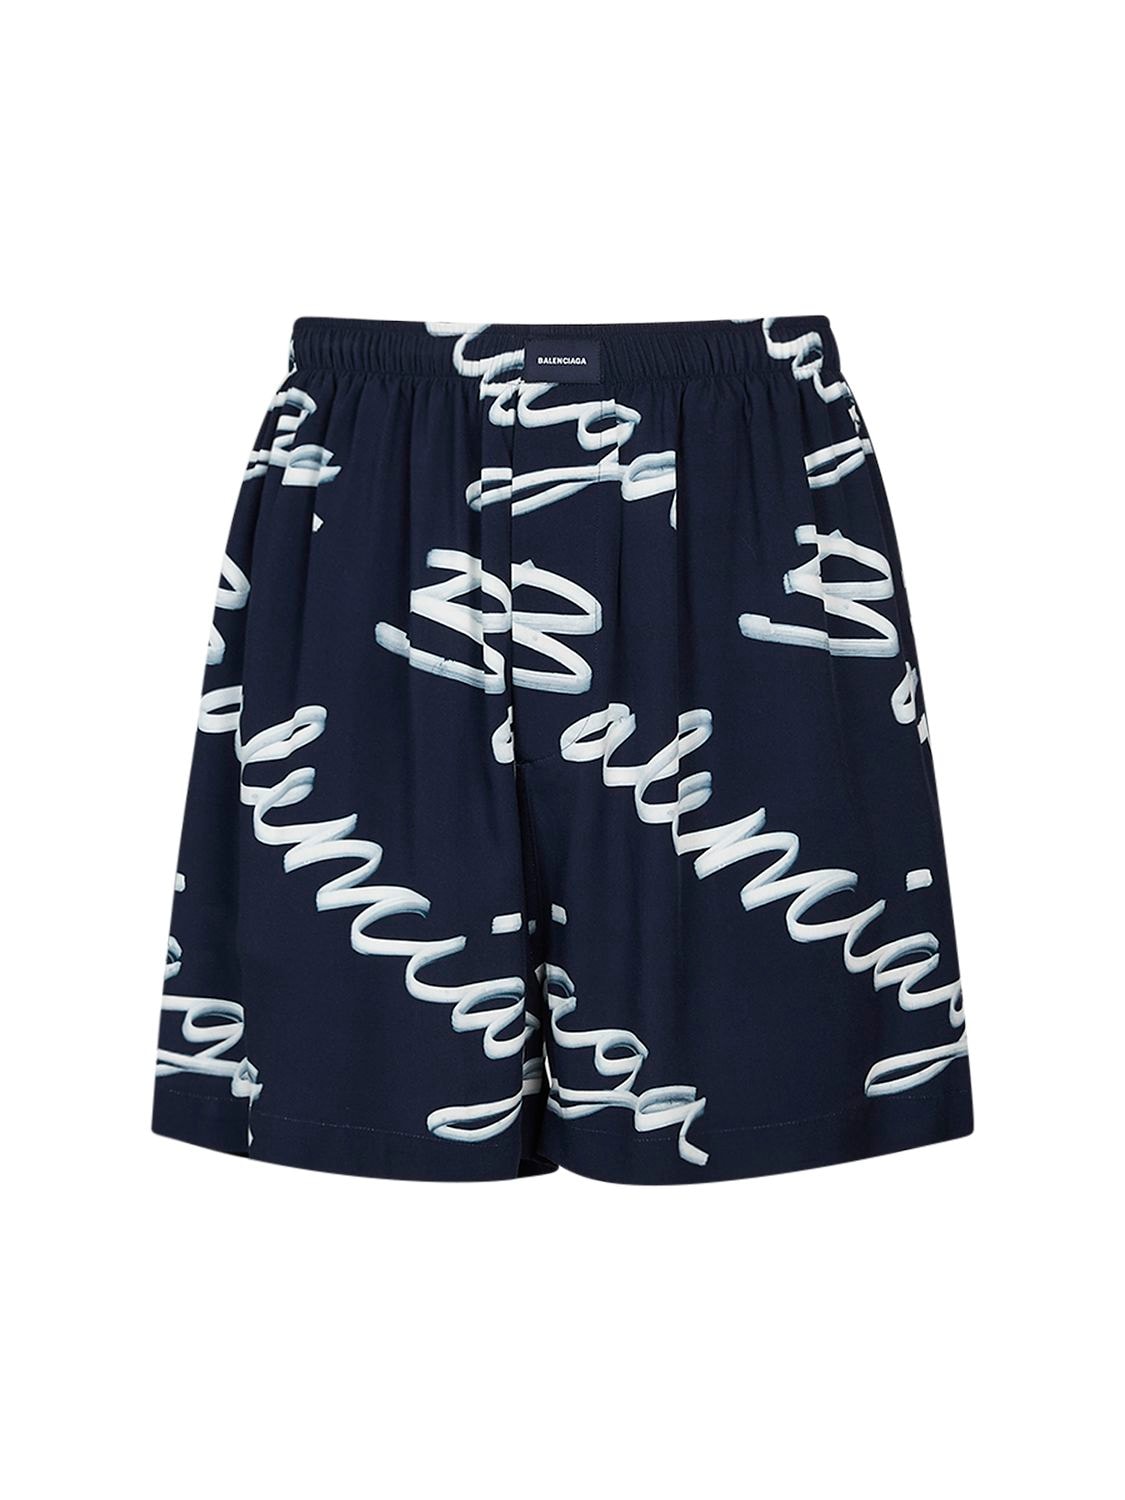 Shop Balenciaga All-over Logo Pyjamas Viscose Shorts In Navy,white